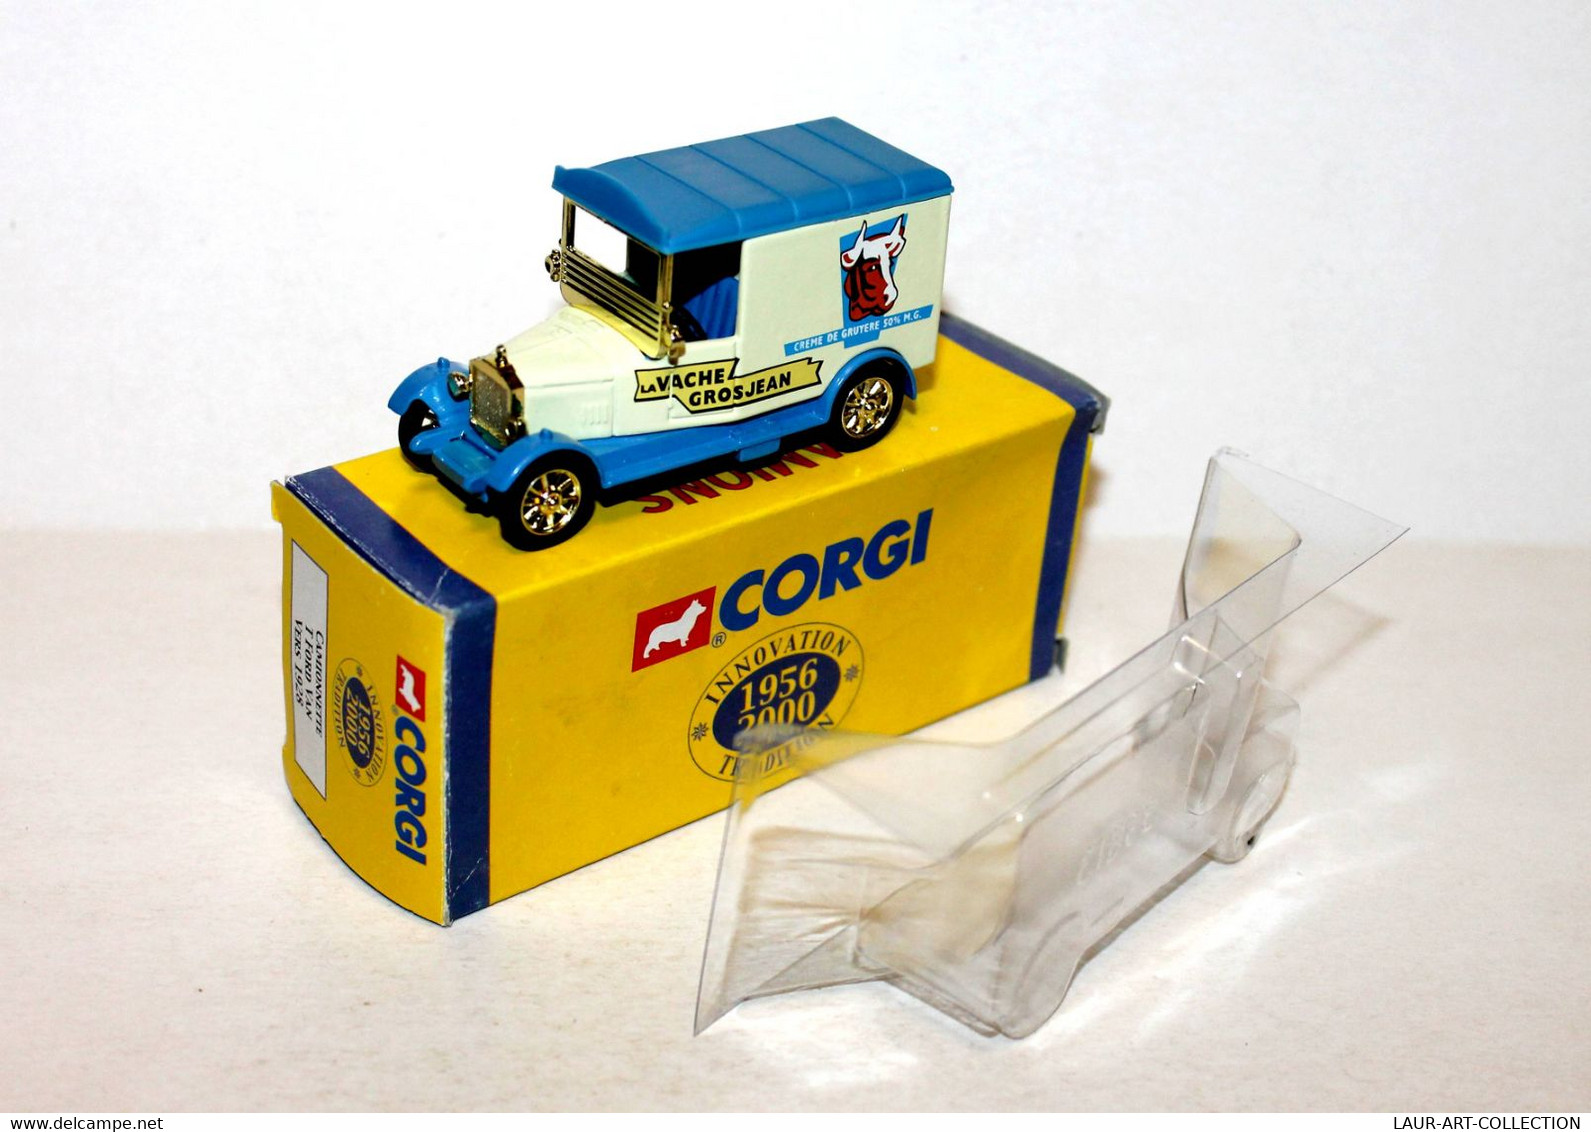 CORGI - CAMIONNETTE T FORD VAN, PUB LA VACHE GROSJEAN - CAMION D'ANTAN 1956-2000 - AUTOMOBILE MINIATURE (2811.29 - Corgi Toys